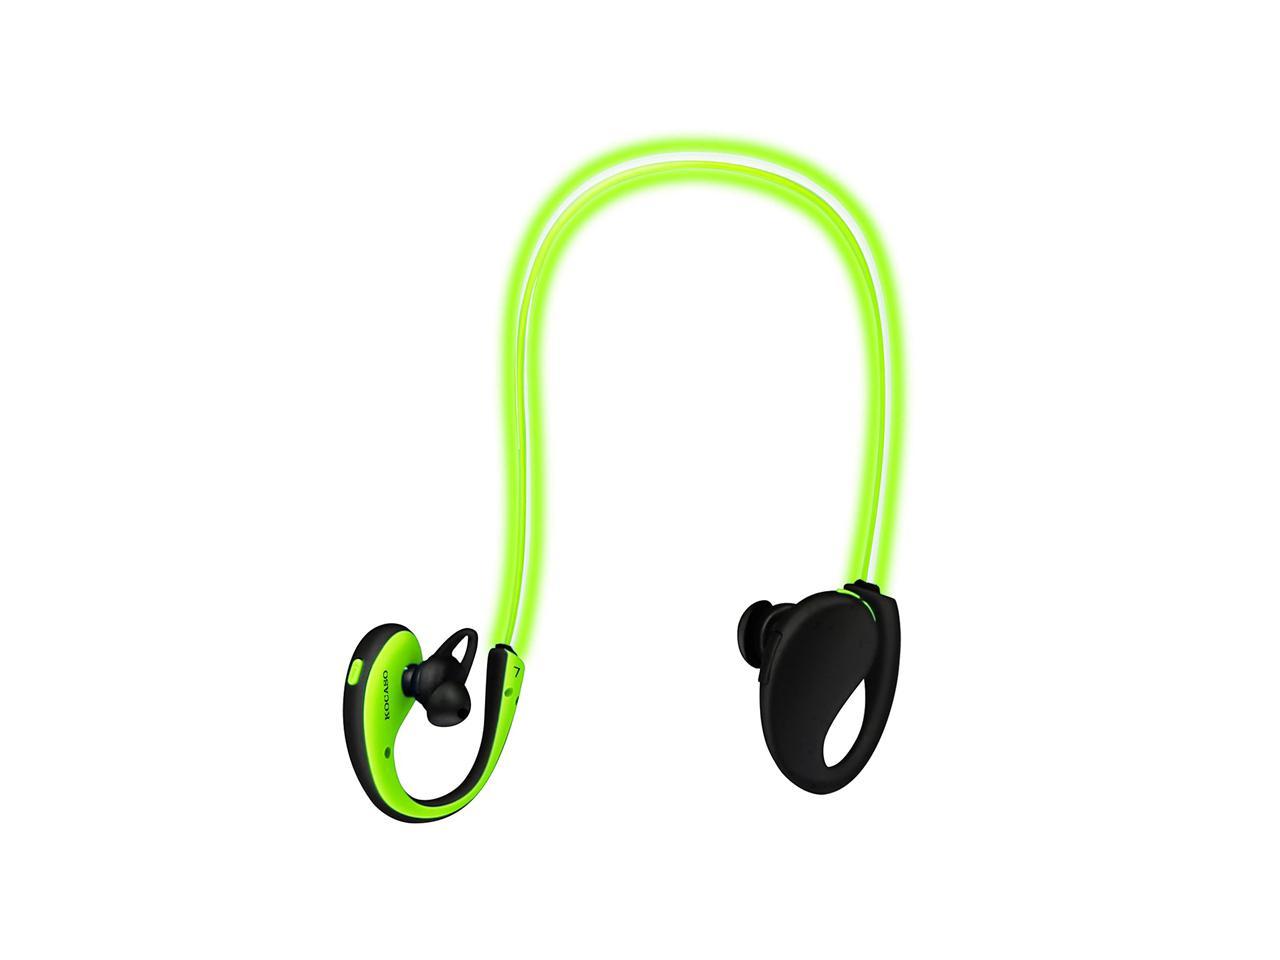 KOCASO Sports Wireless Headphone V4.1 Neckband Earphones LED Light 6-Hrs Playtime w/Mic for Running